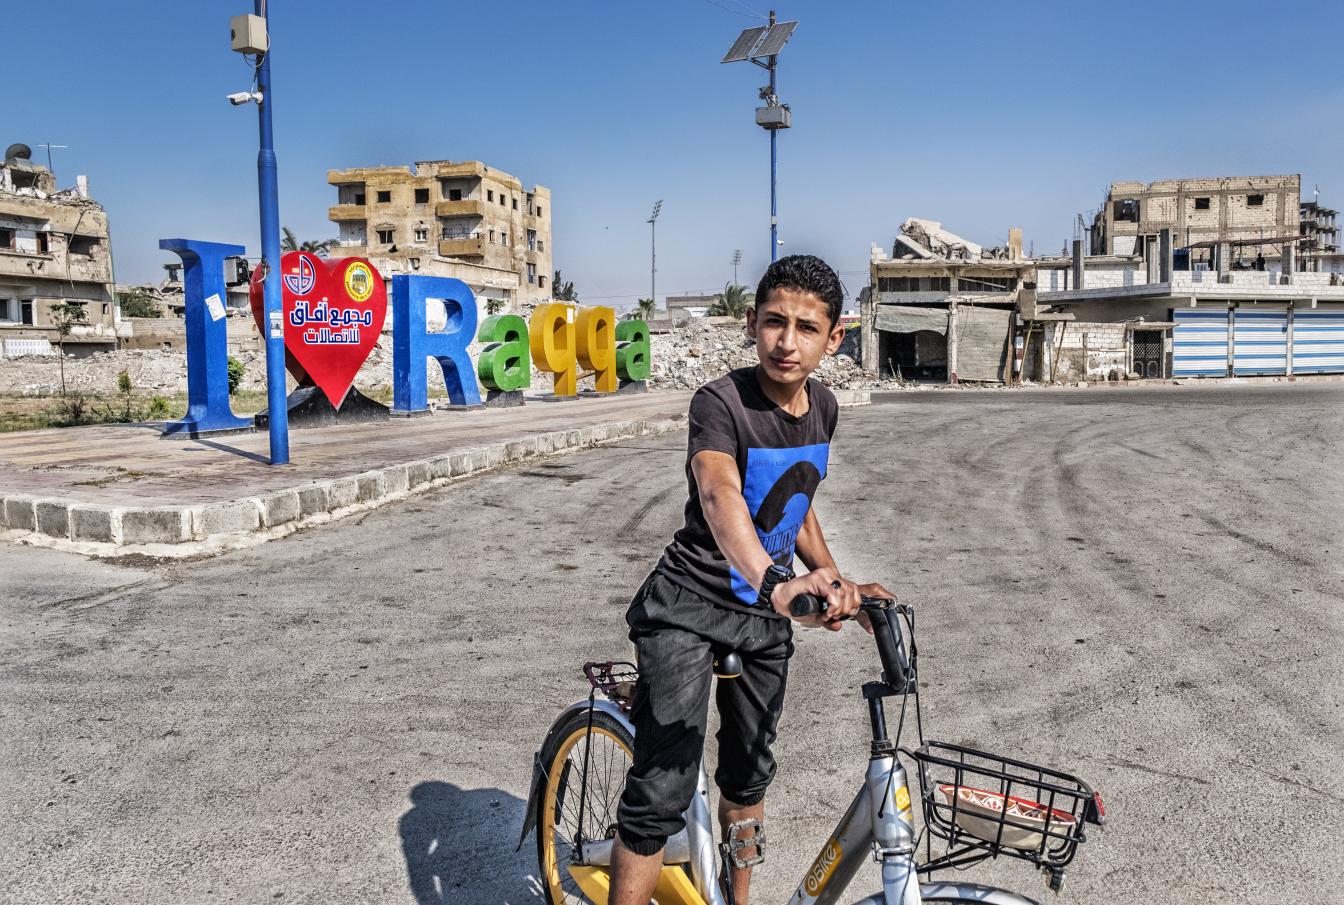 Raqqa in 2019